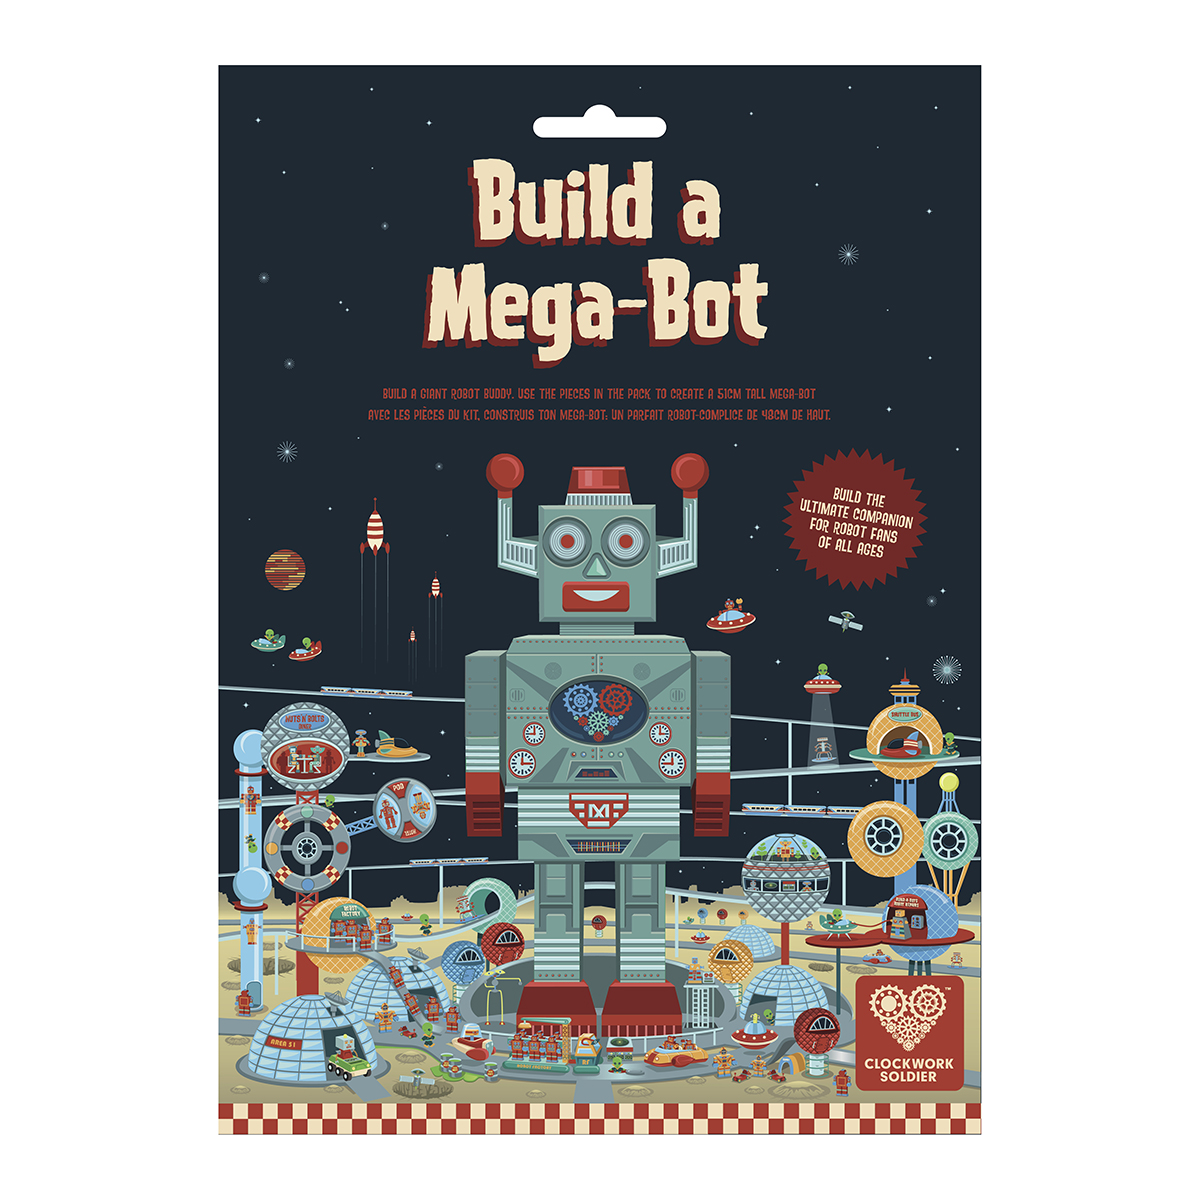 Build a Mega-Bot